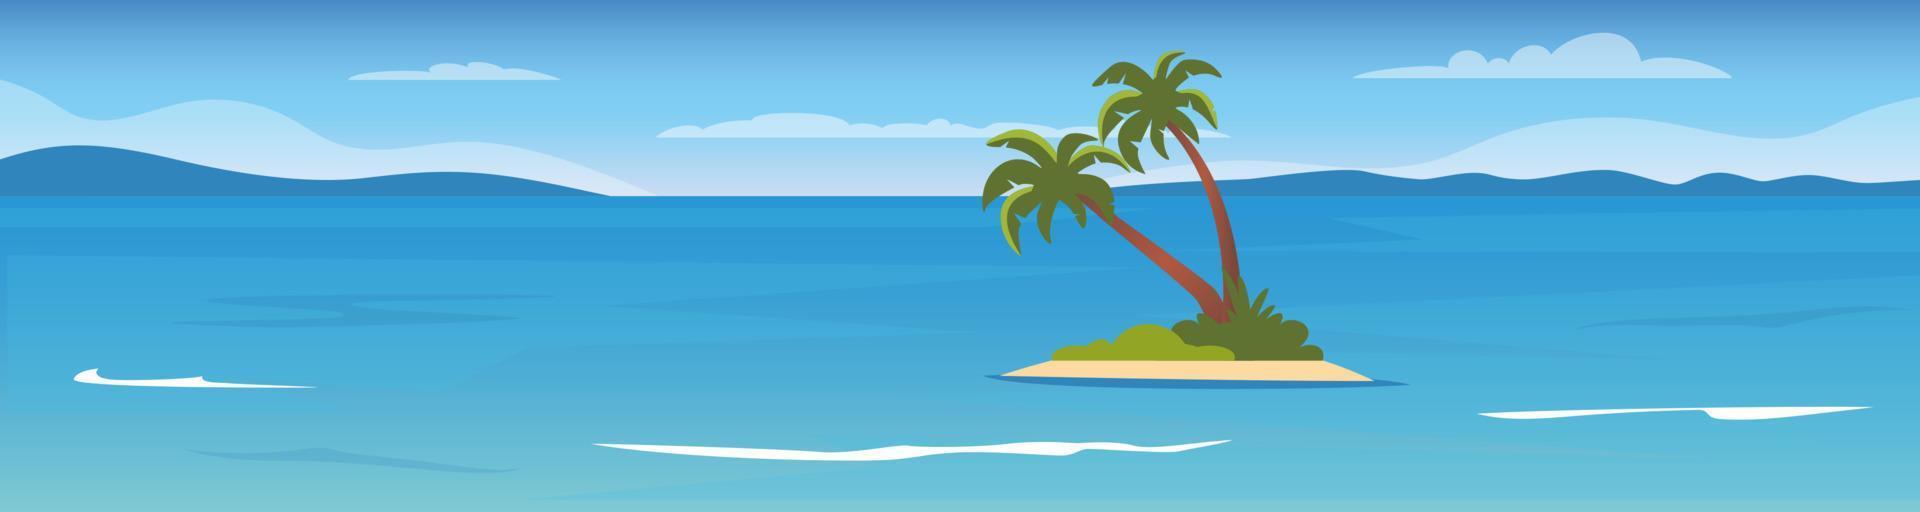 tropische Insel im Ozean mit Palmen. Meeresoberfläche, Berge am Horizont, Wellen. Sommerferien Urlaub. flache vektorillustration. vektor